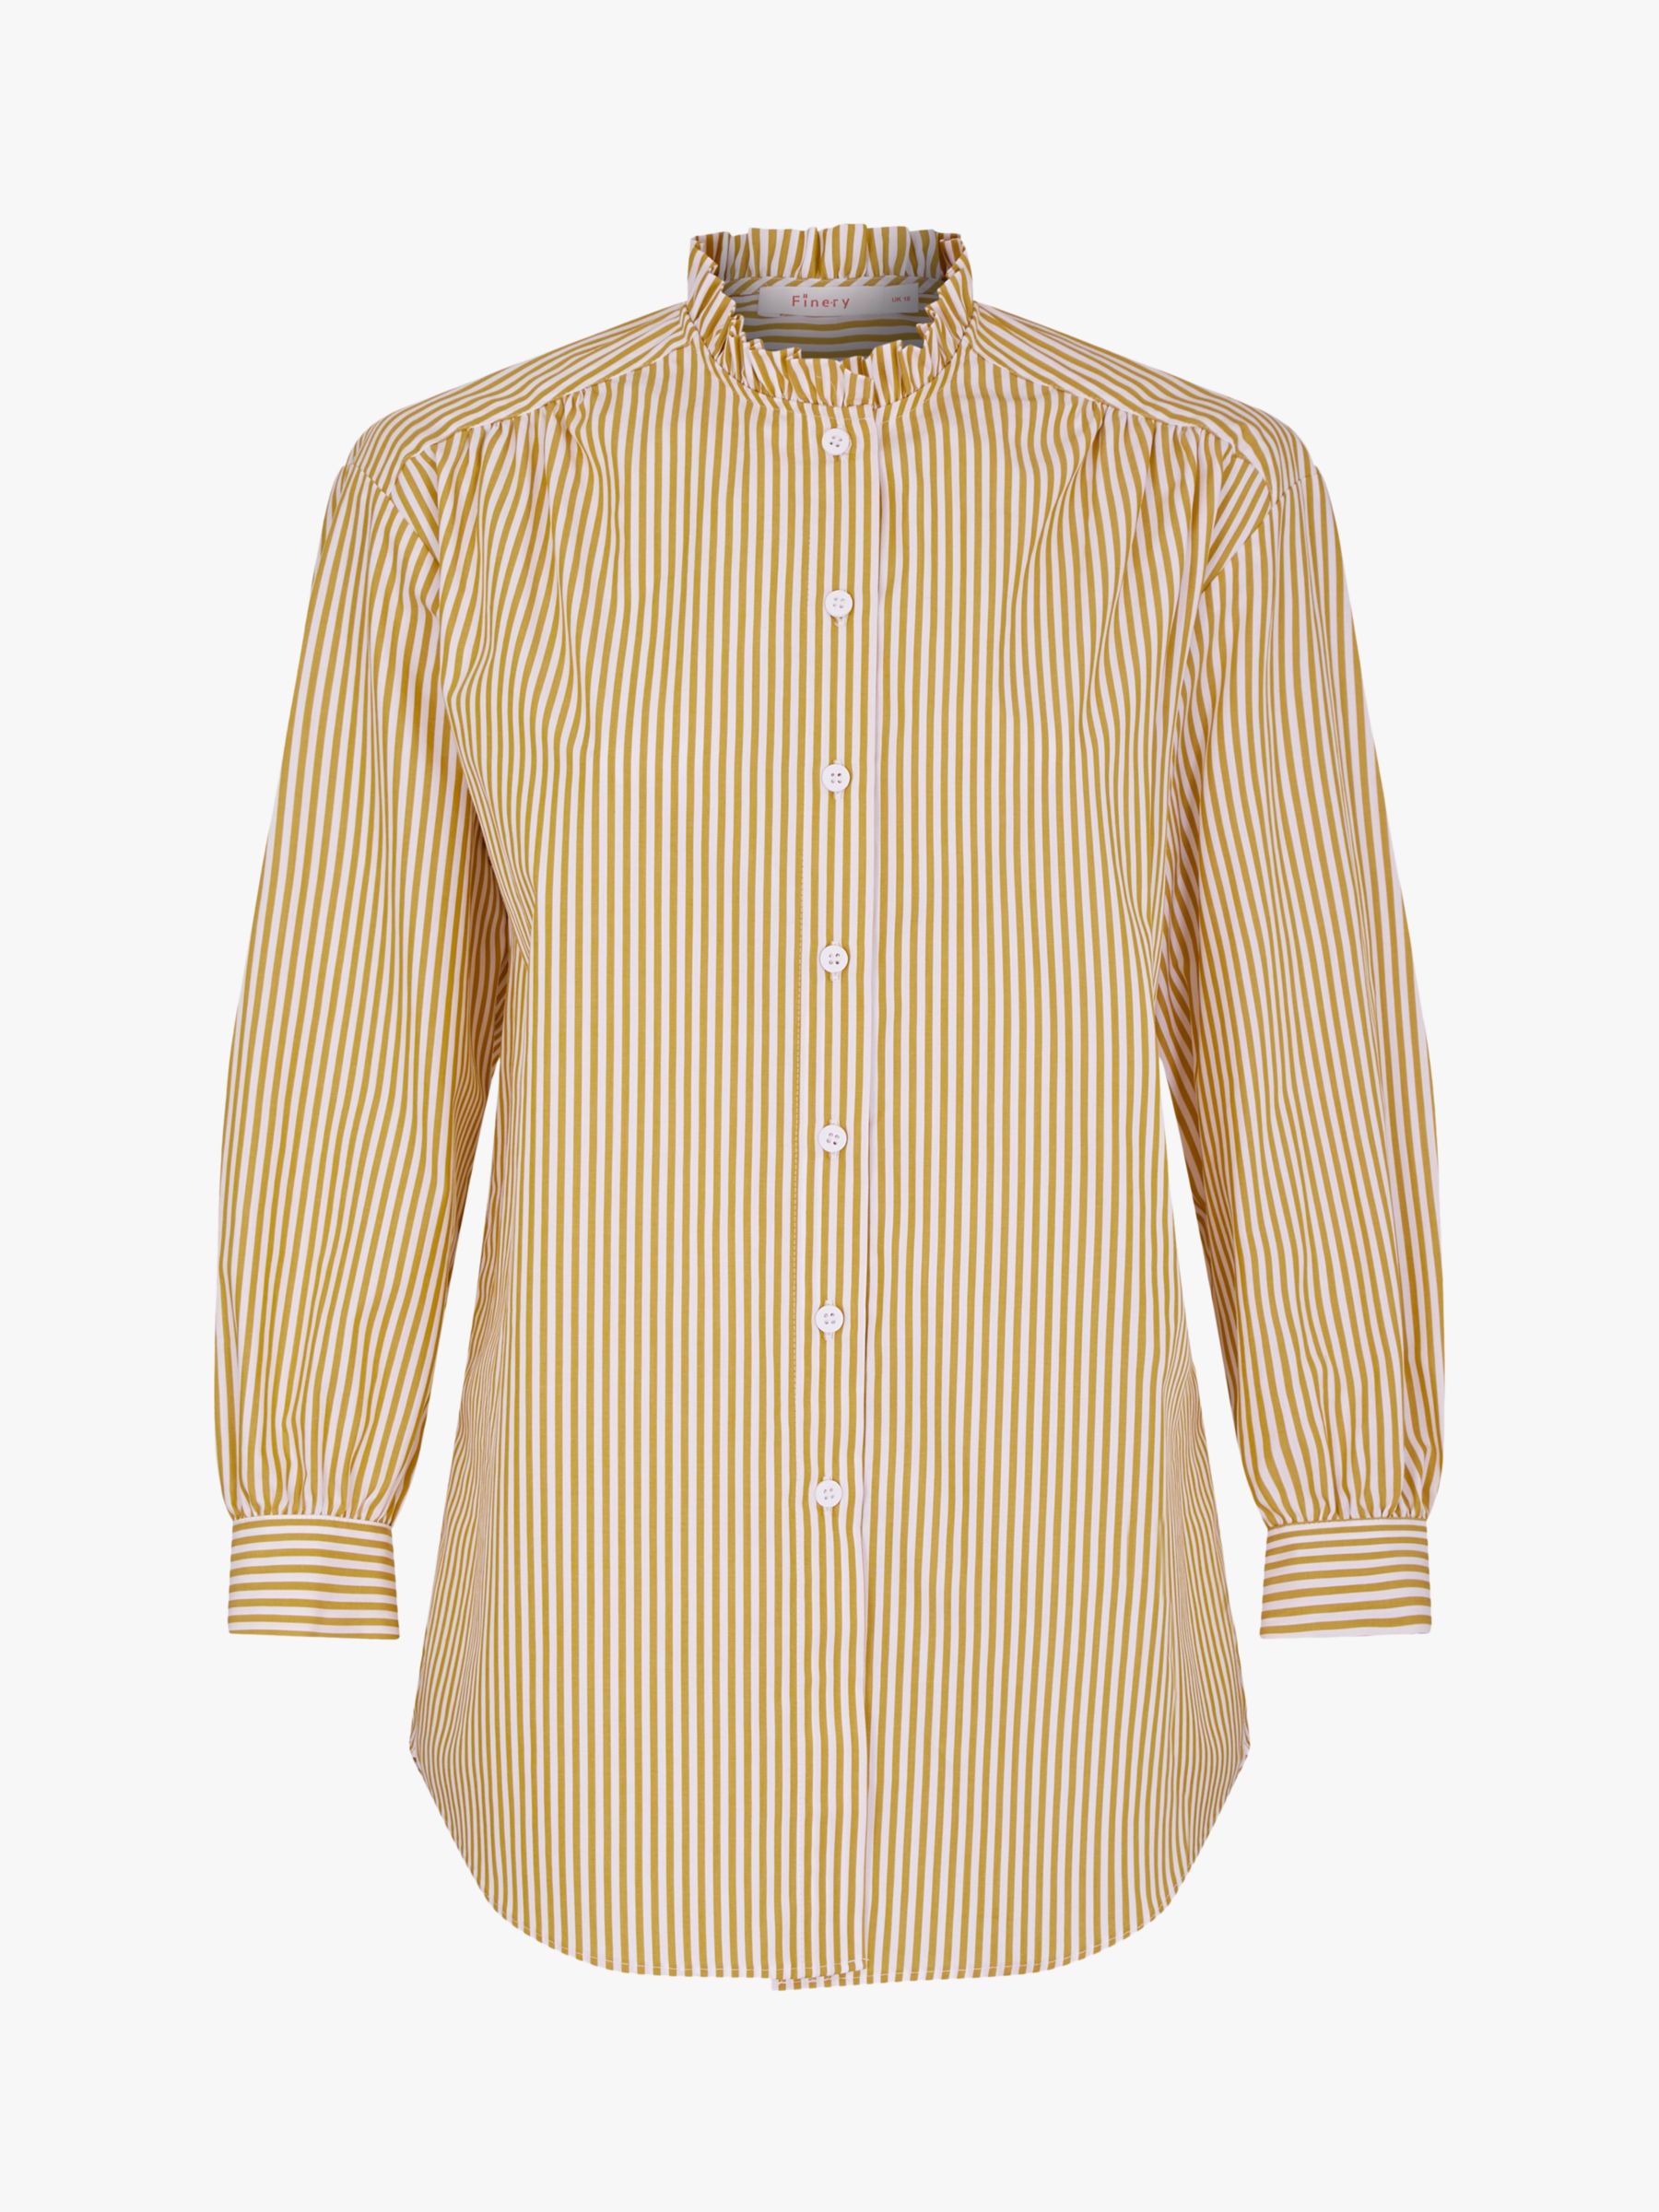 Finery Daisy Poplin Stripe Shirt, Multi